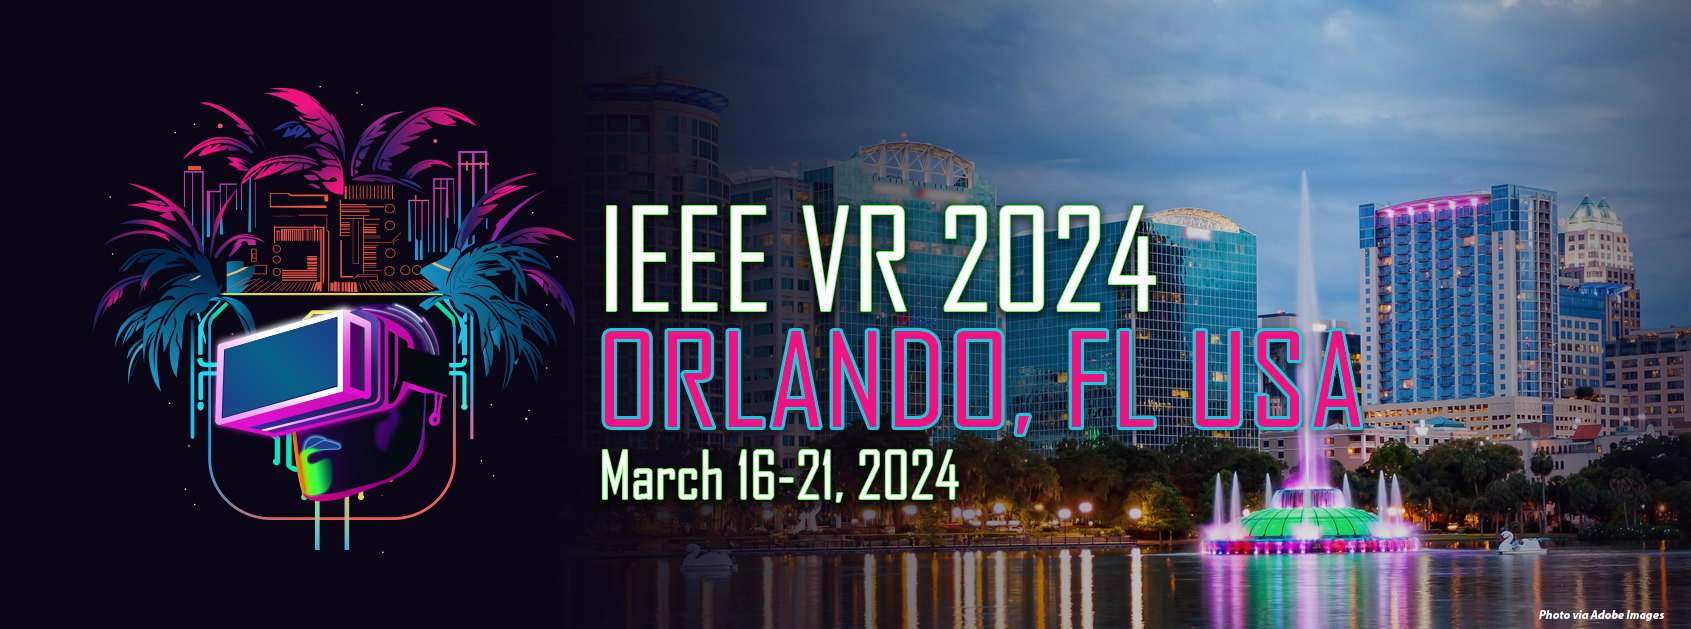 IEEE VR 2024